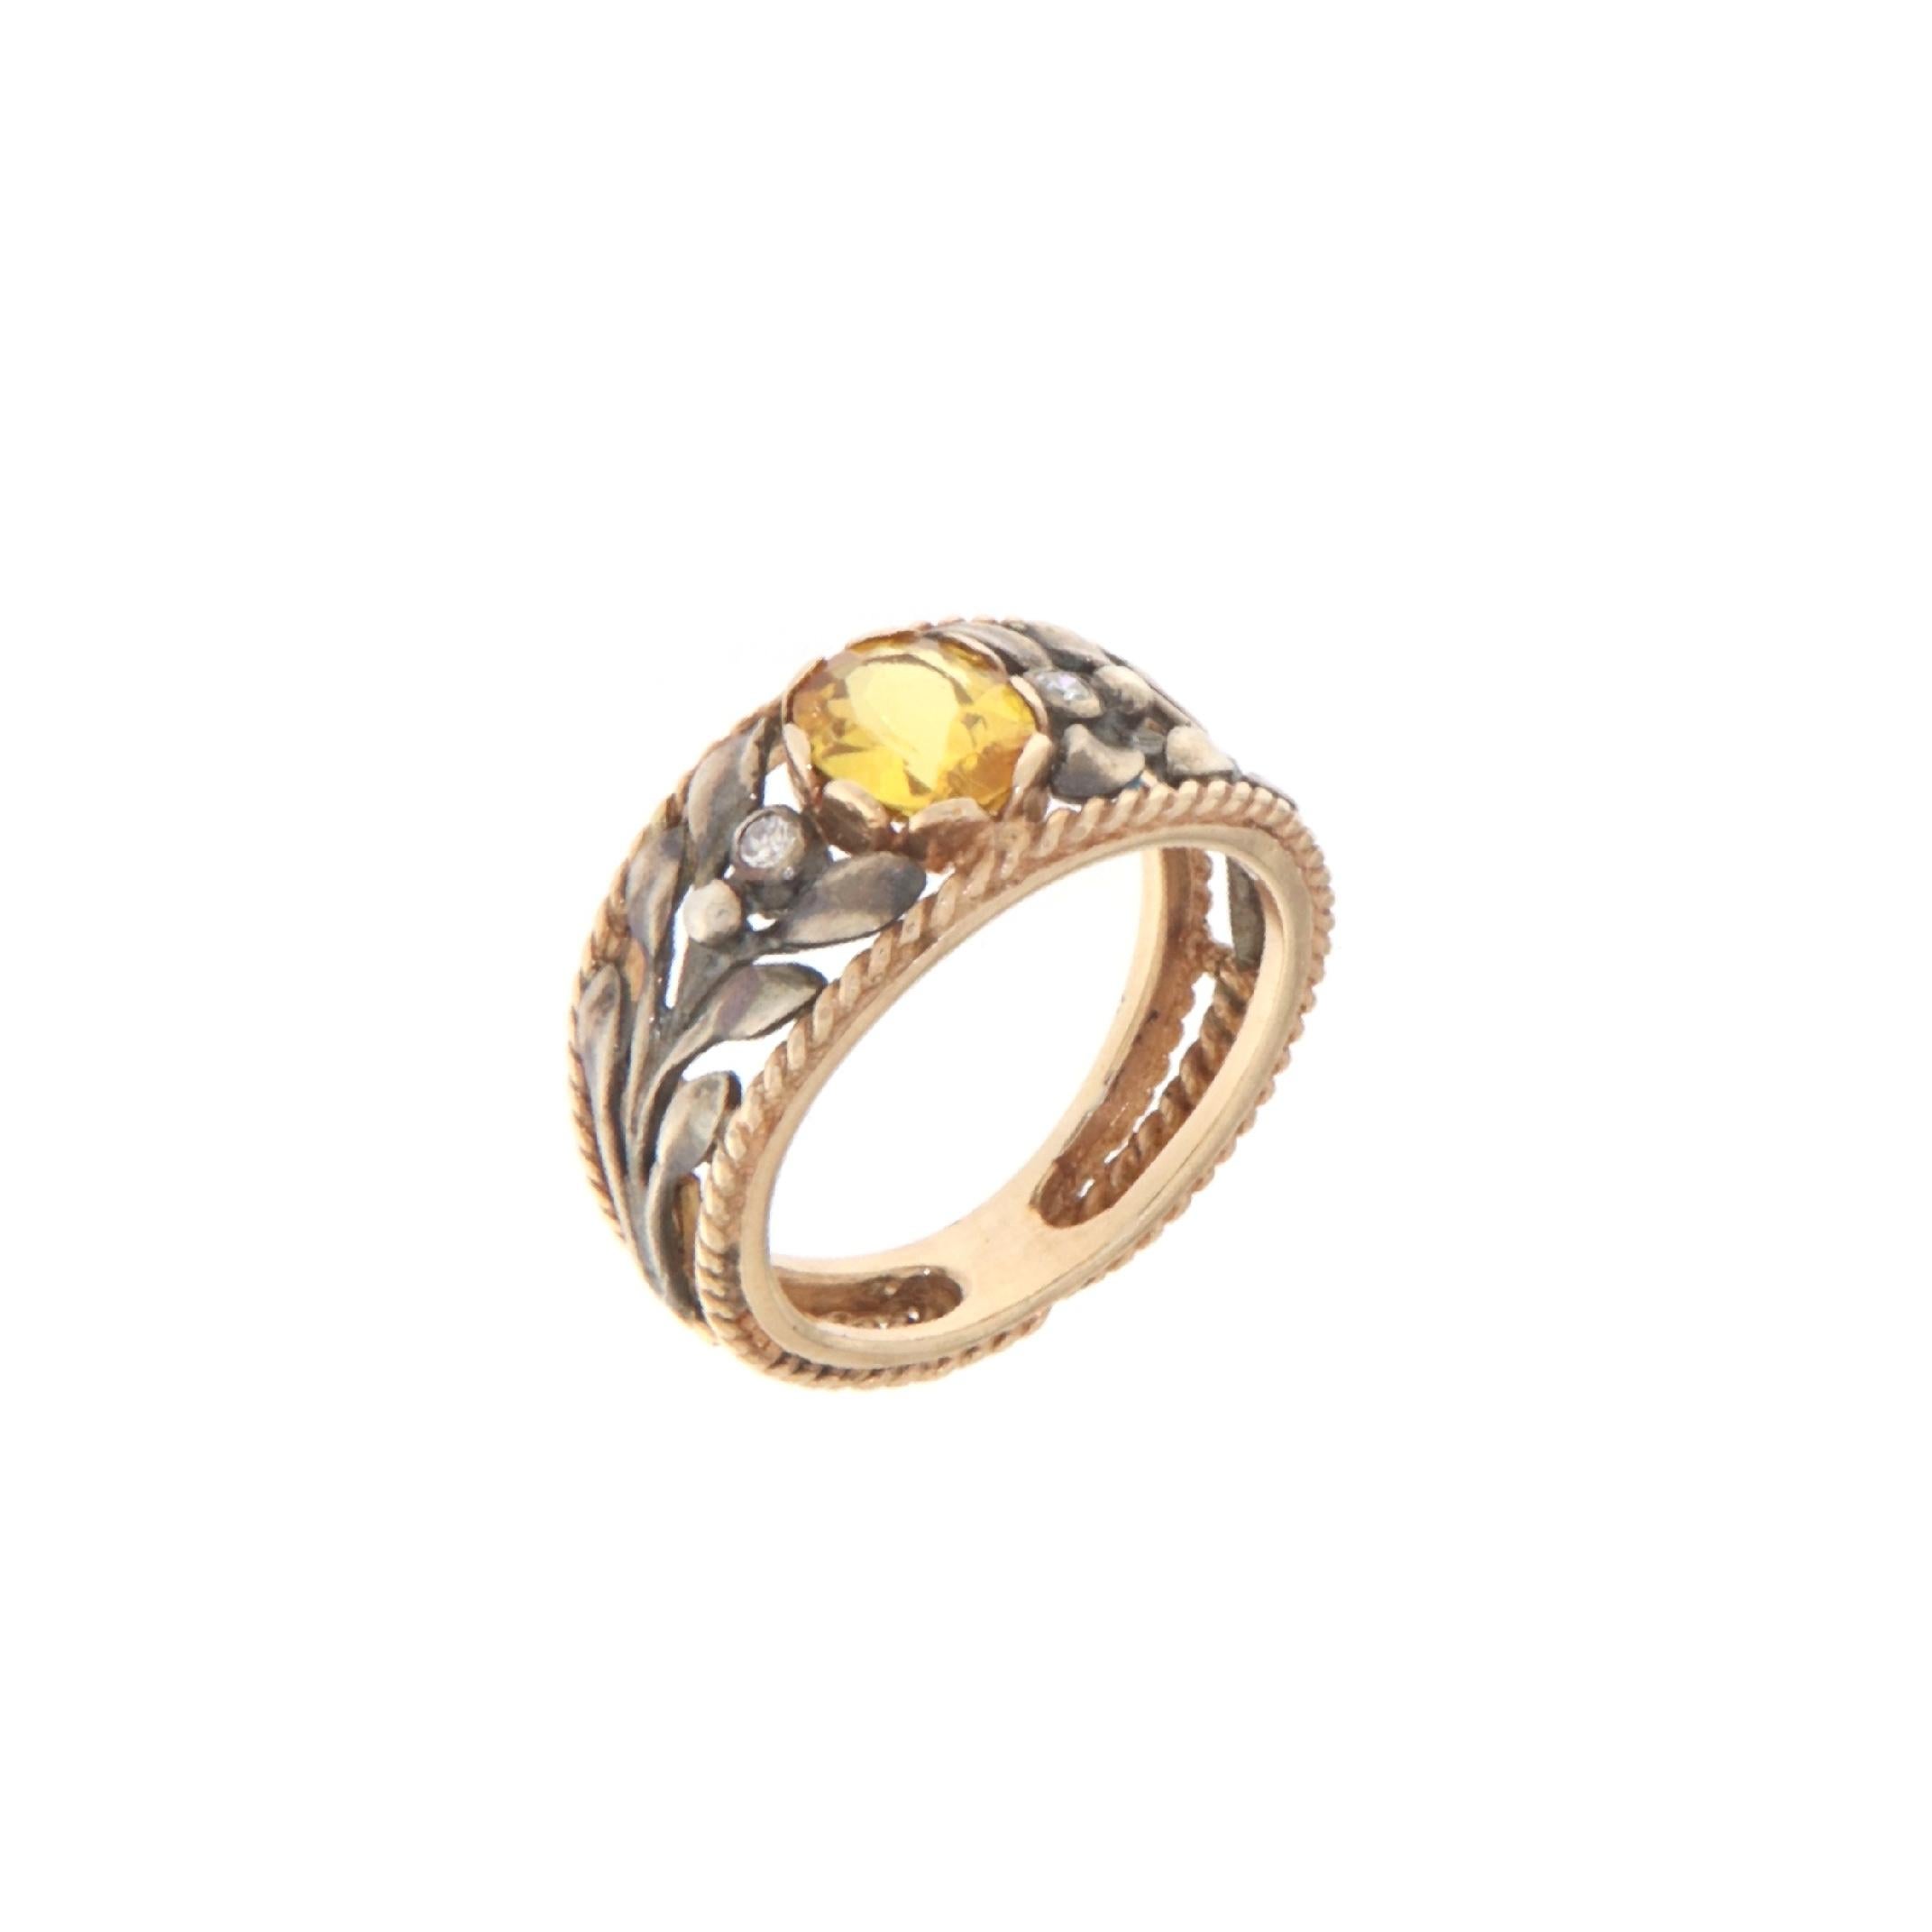 Dieser bezaubernde Ring verbindet die Wärme von 14-karätigem Gelbgold mit dem Glanz von 800er Silber und präsentiert ein Design, das sowohl traditionell als auch modern ist. Das Herzstück ist ein strahlend gelber Saphir, dessen goldener Farbton an